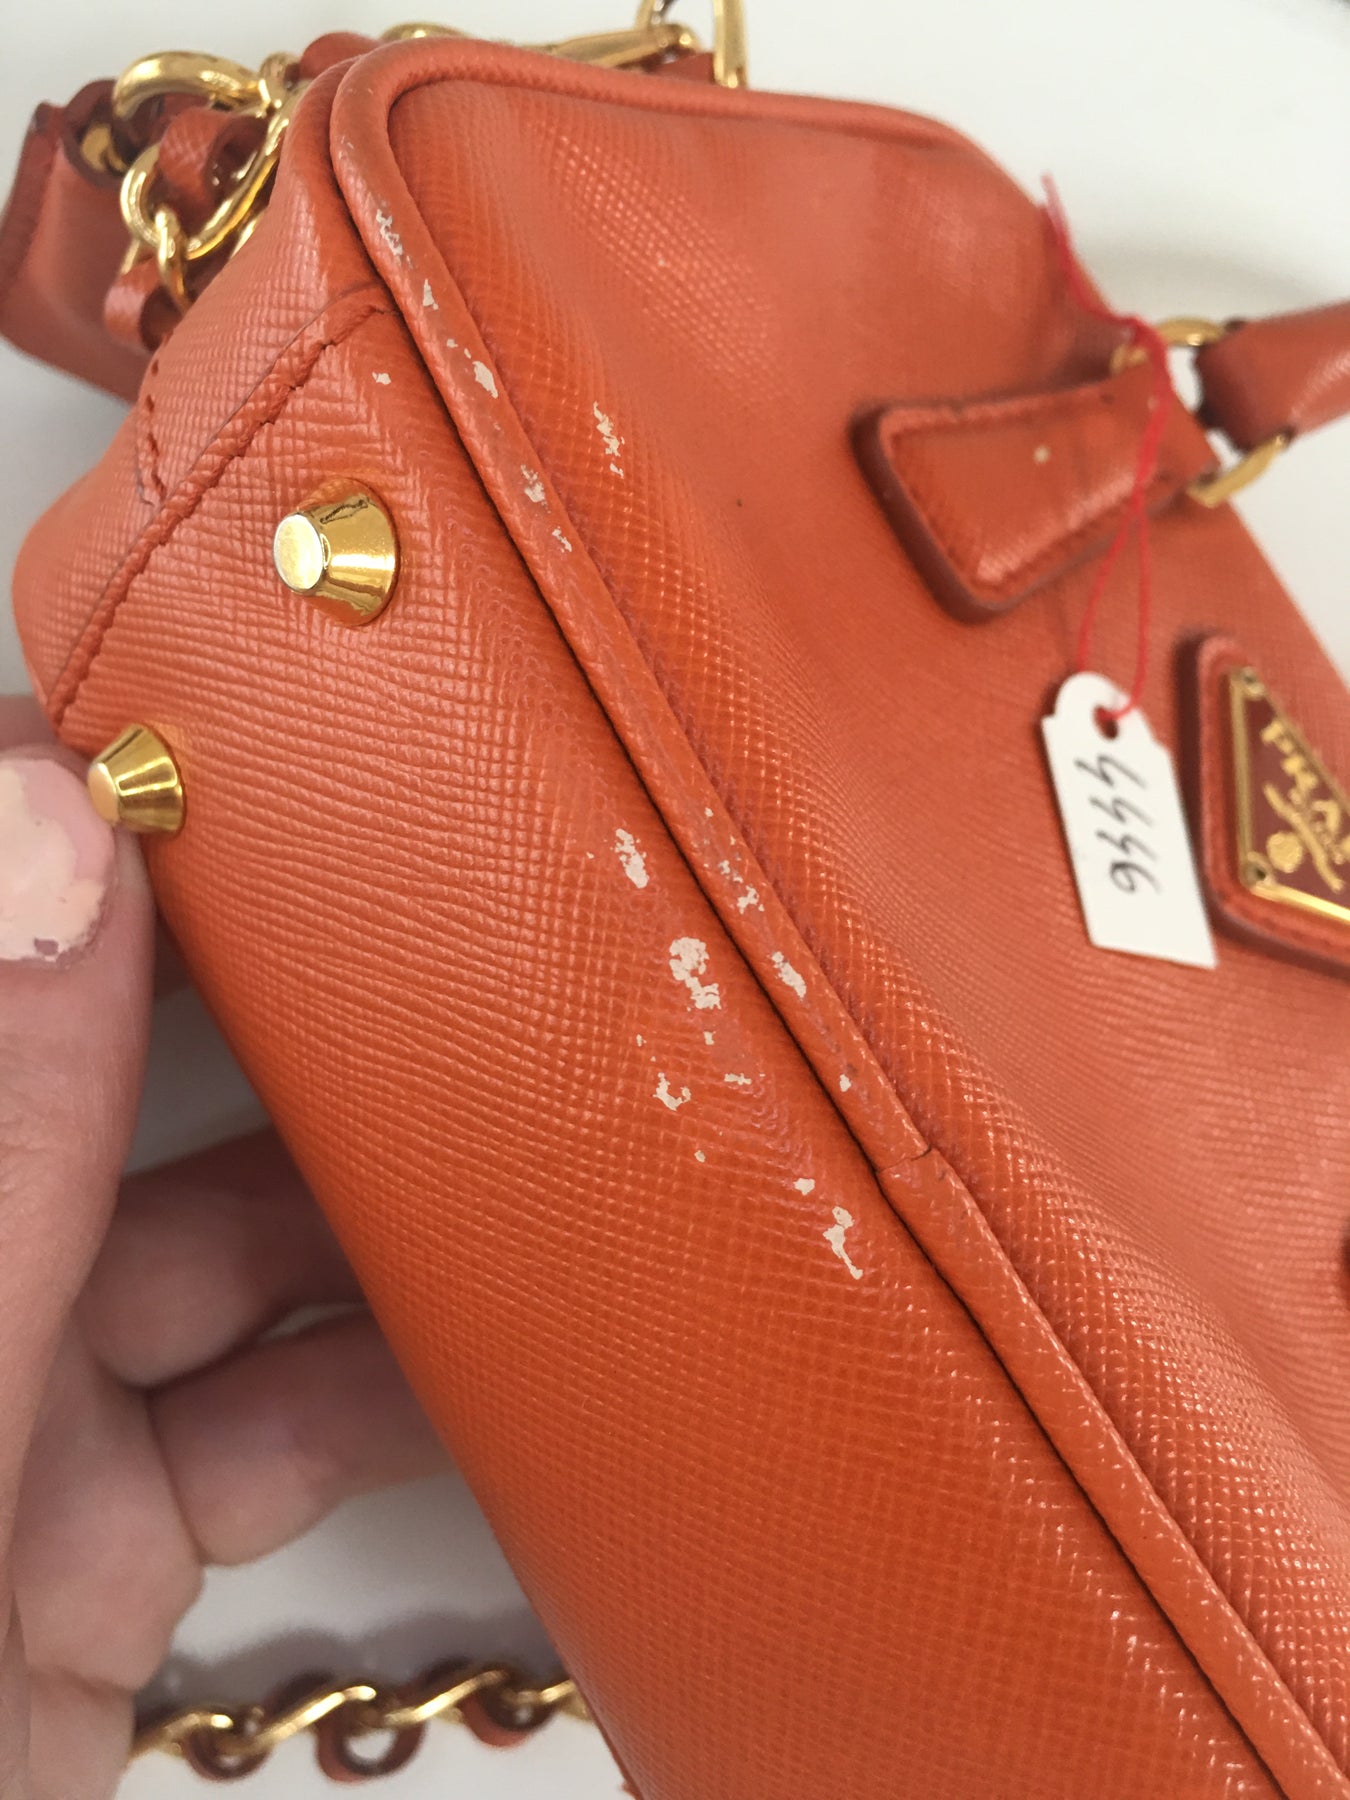 Prada Galleria Saffiano leather small tote crossbody bag in orange